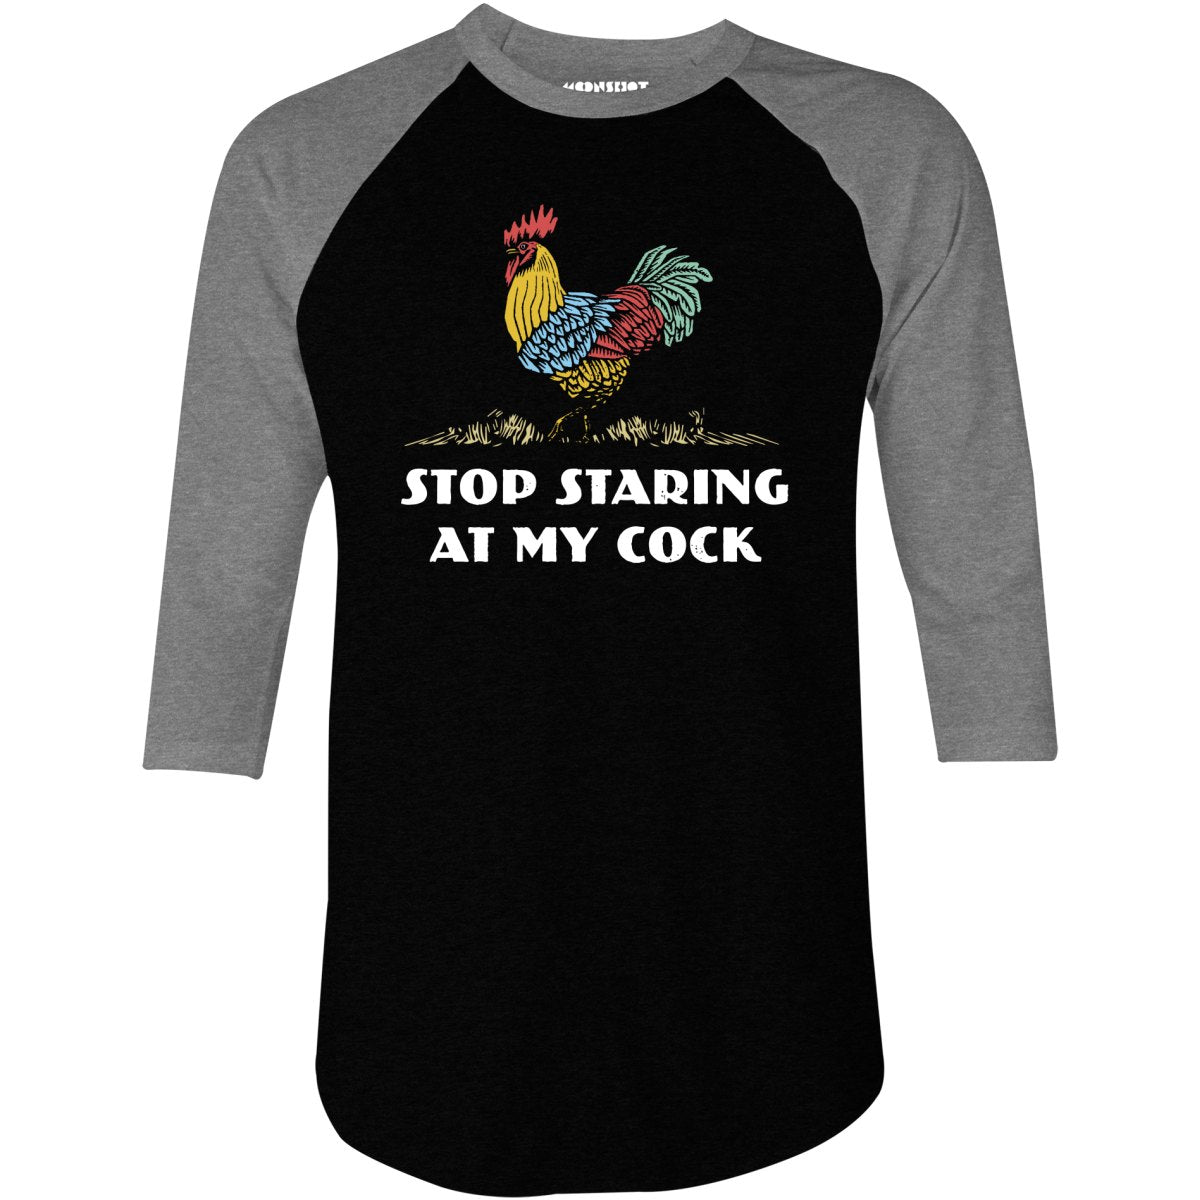 Stop Staring at My Cock - 3/4 Sleeve Raglan T-Shirt